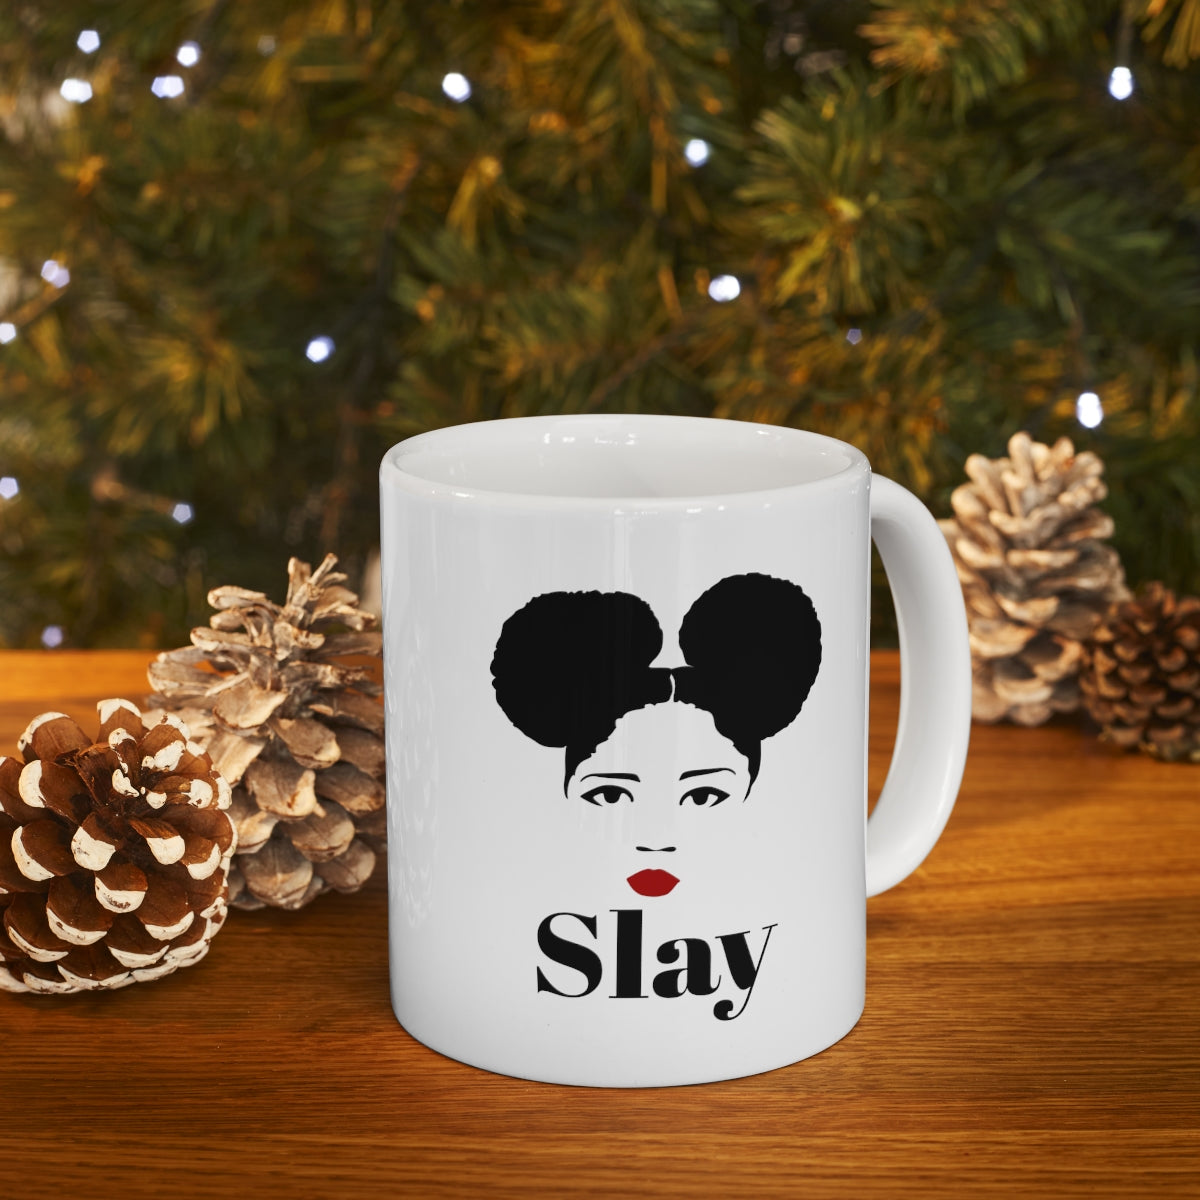 Slay Ceramic Mug 11oz